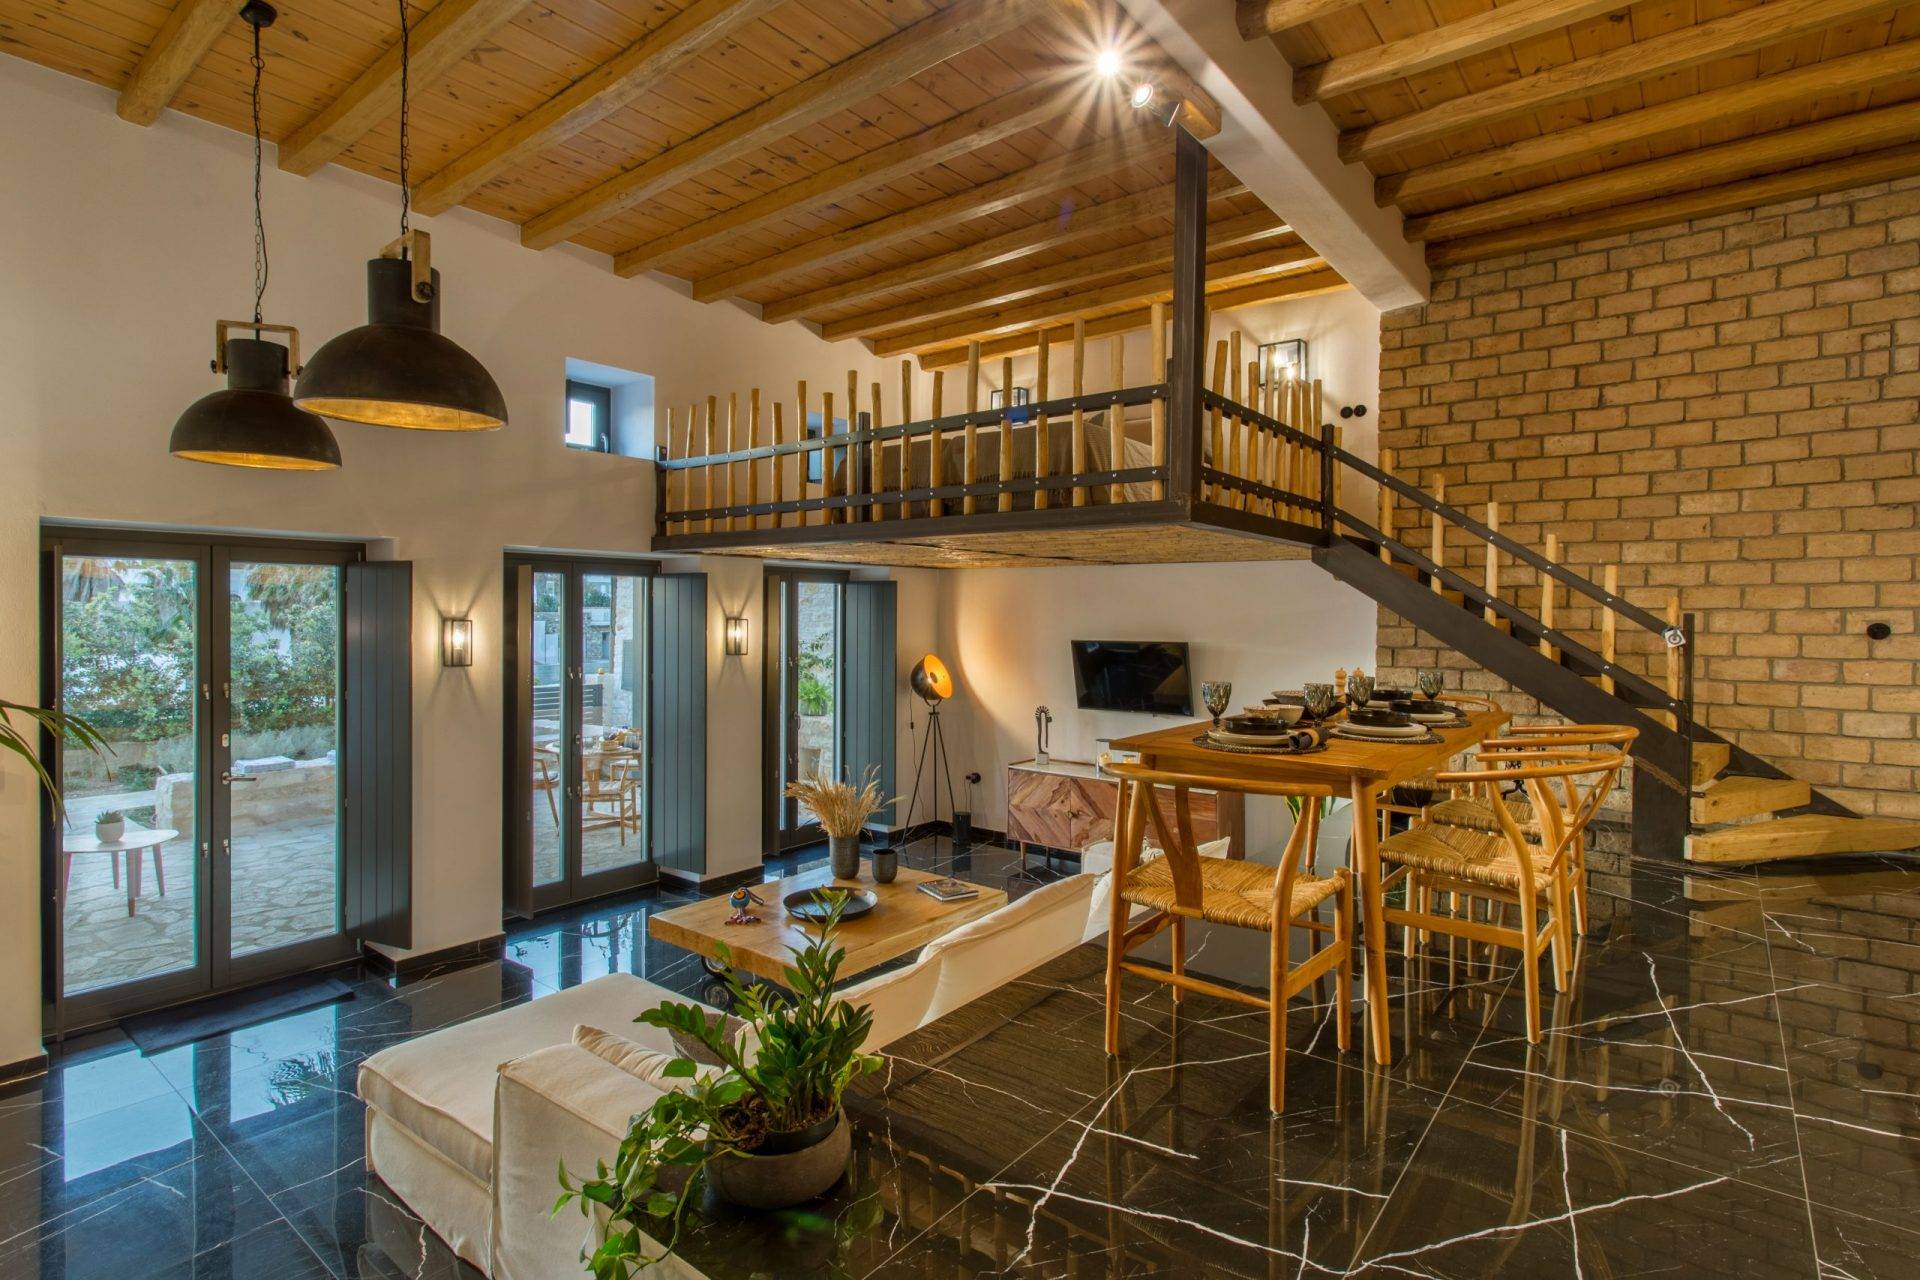 Rent Traditional Villa Olea In Paros Greece - Interior View